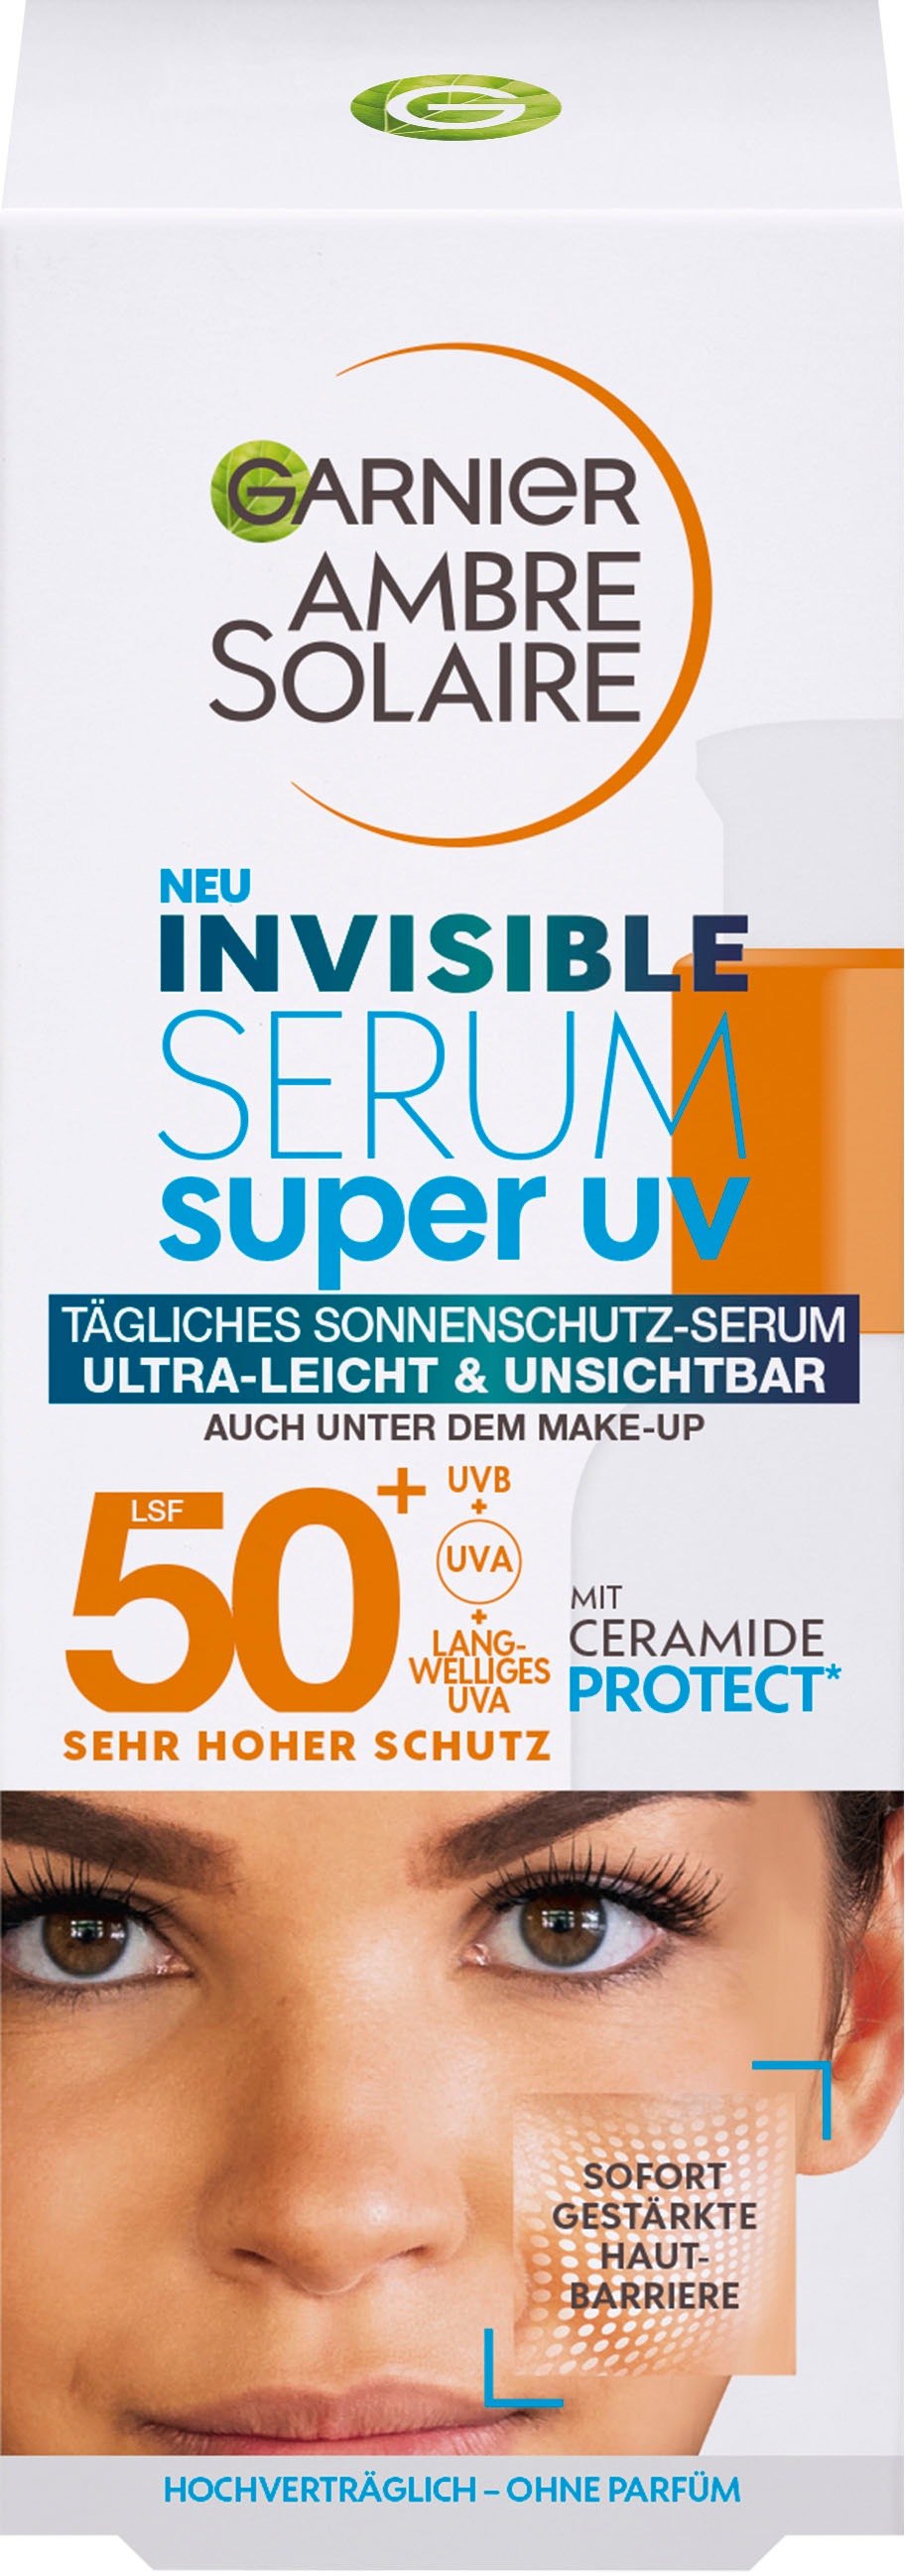 GARNIER Gesichtsserum »Garnier OTTO Super Online UV Shop Sonnenschutz-Serum« im